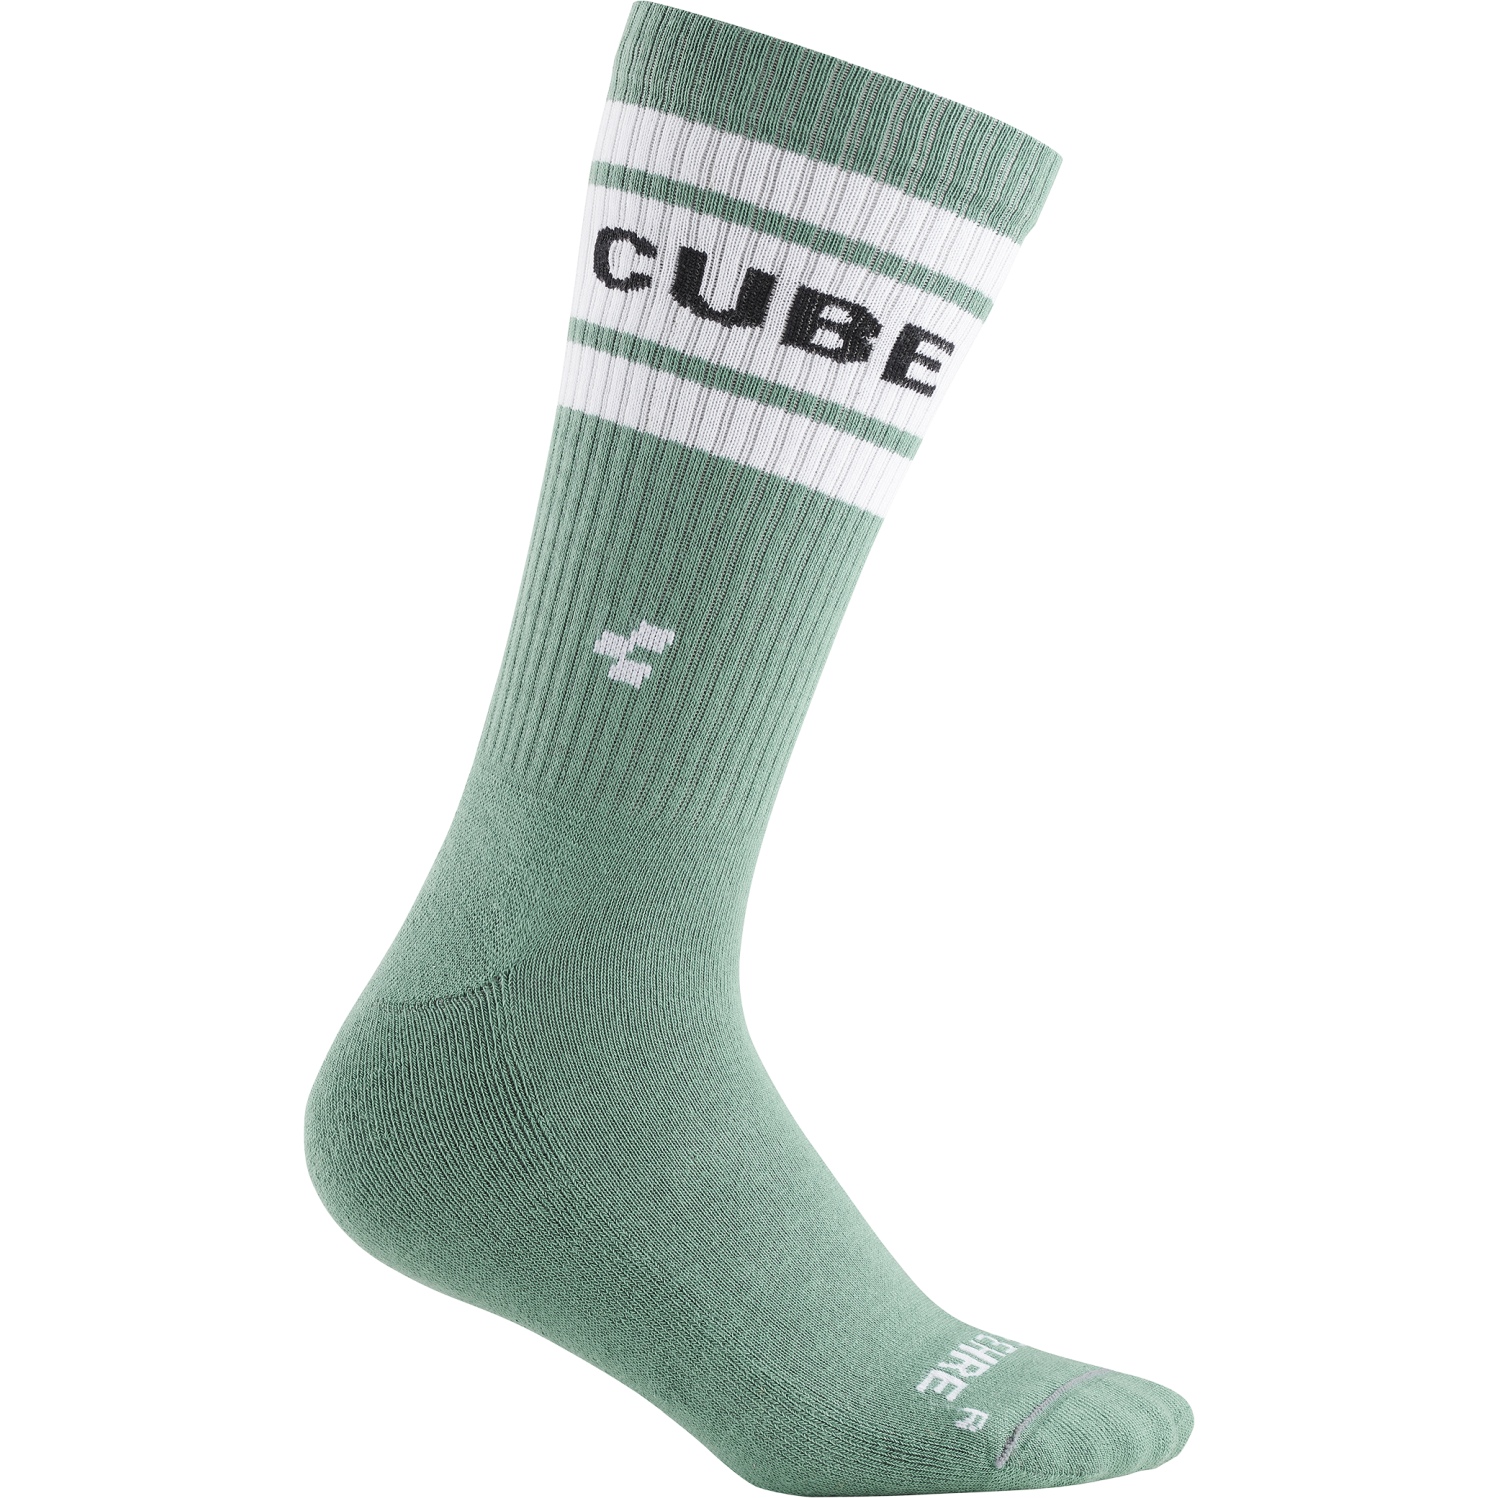 Produktbild von CUBE After Race High Cut Socken - grün